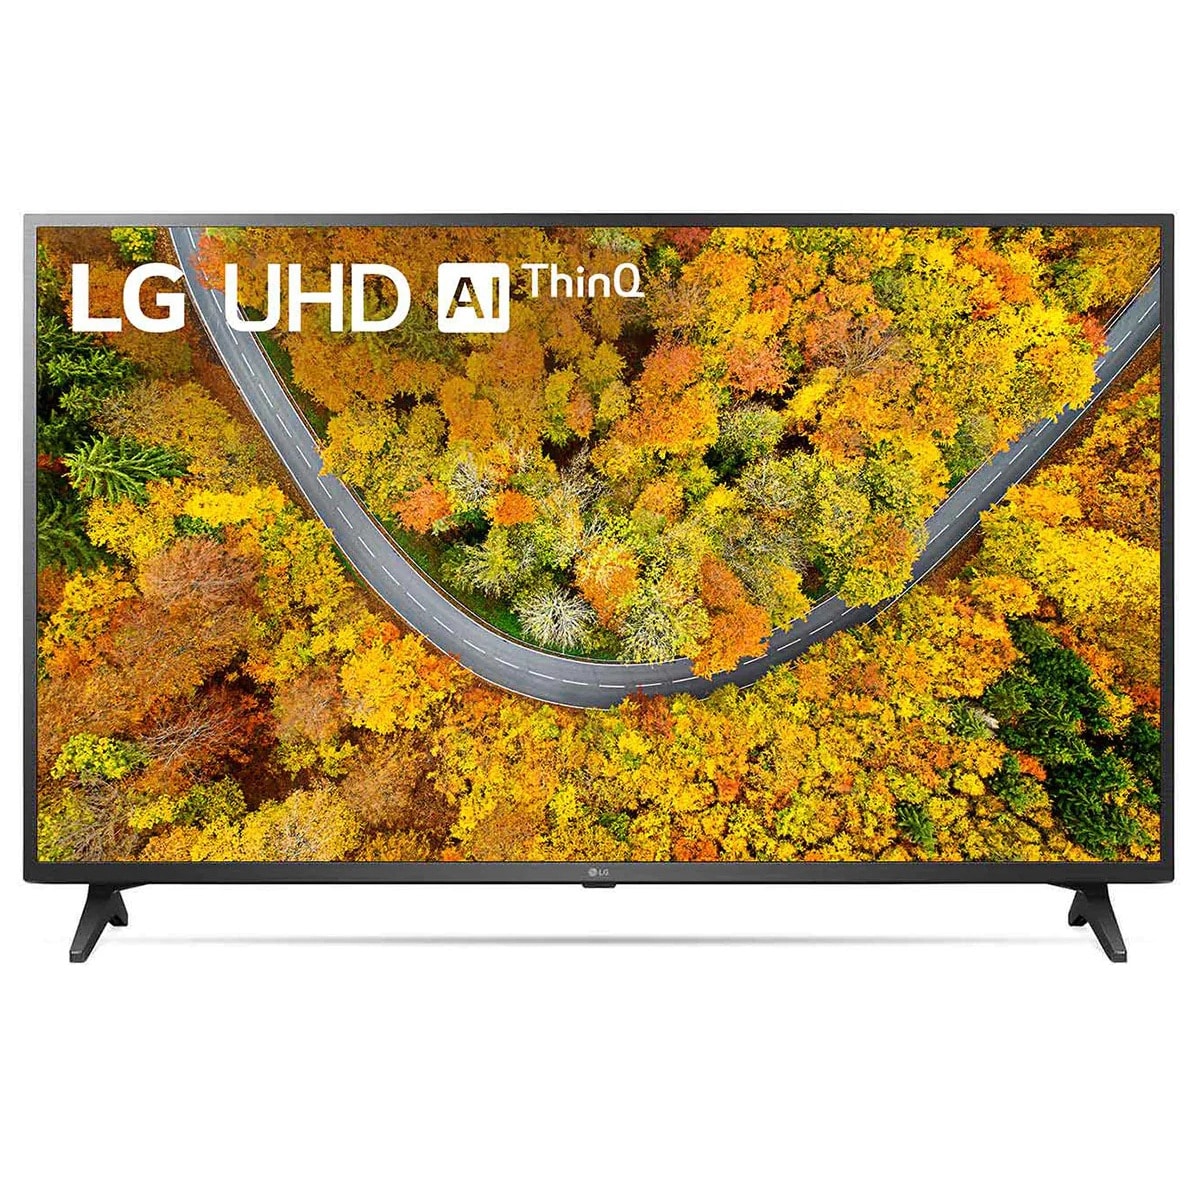 Pantalla Smart TV LG de 43 pulgadas Full HD